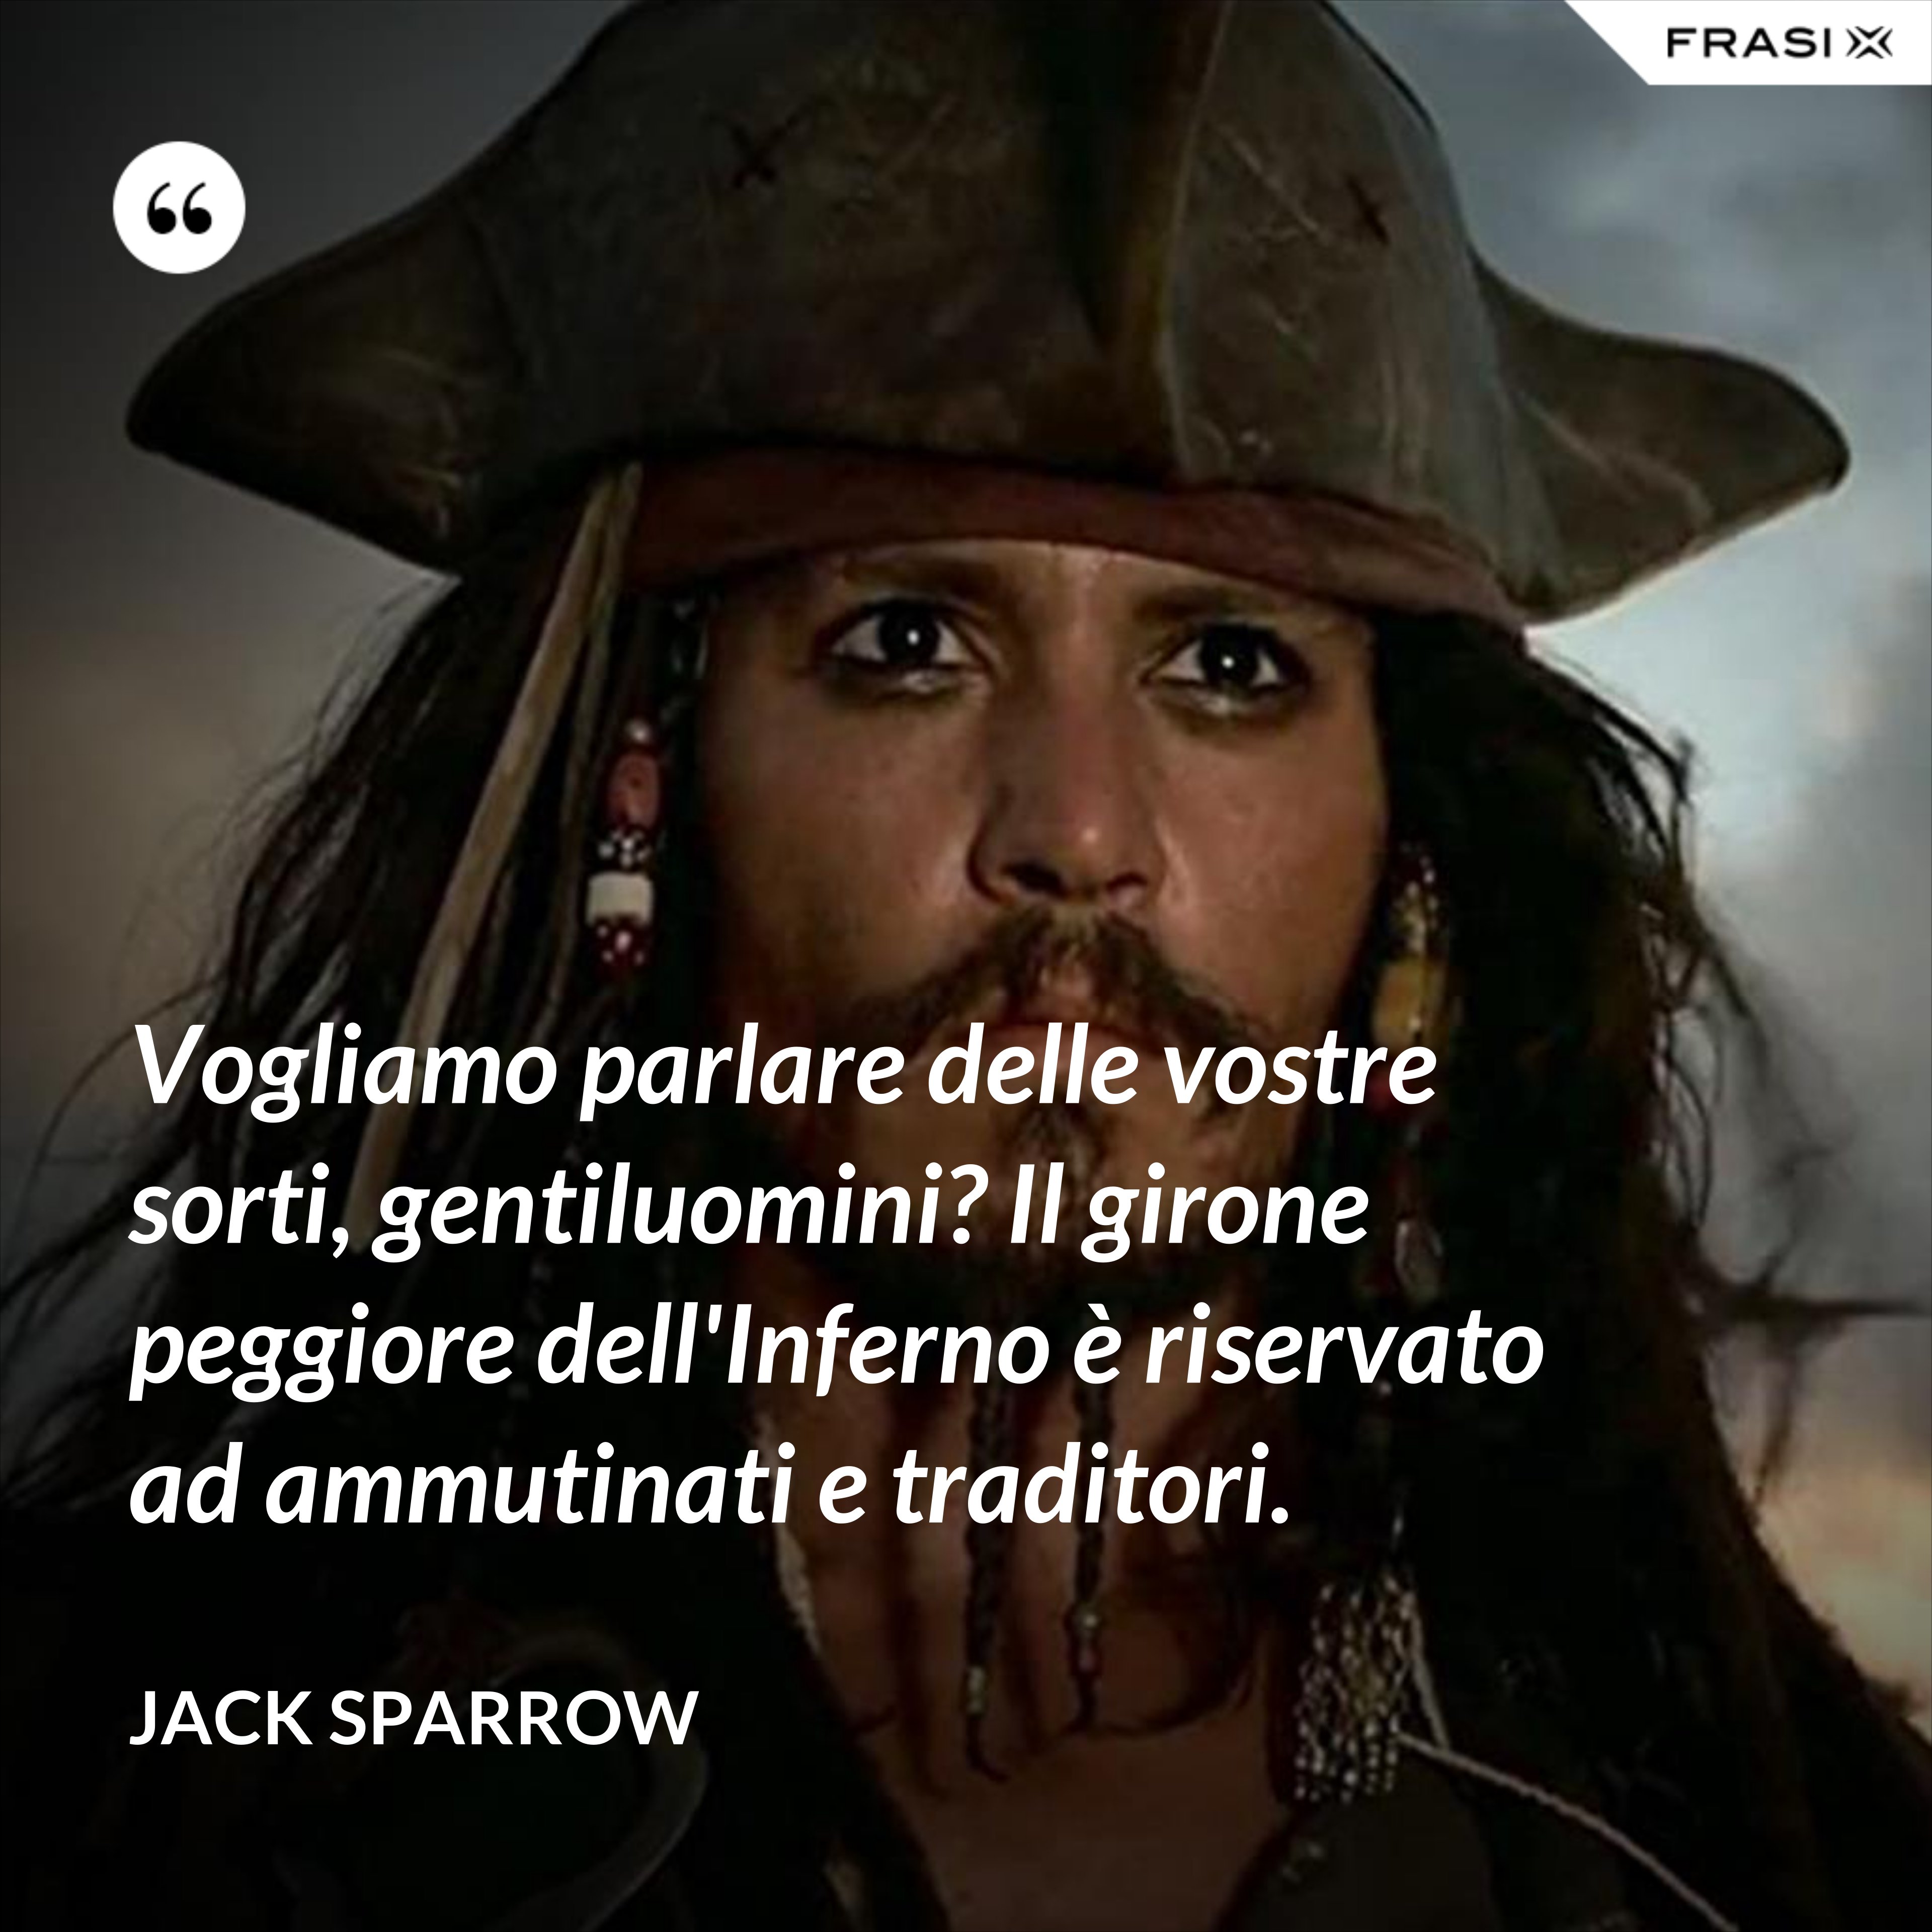 Vogliamo parlare delle vostre sorti, gentiluomini? Il girone peggiore dell'Inferno è riservato ad ammutinati e traditori. - Jack Sparrow